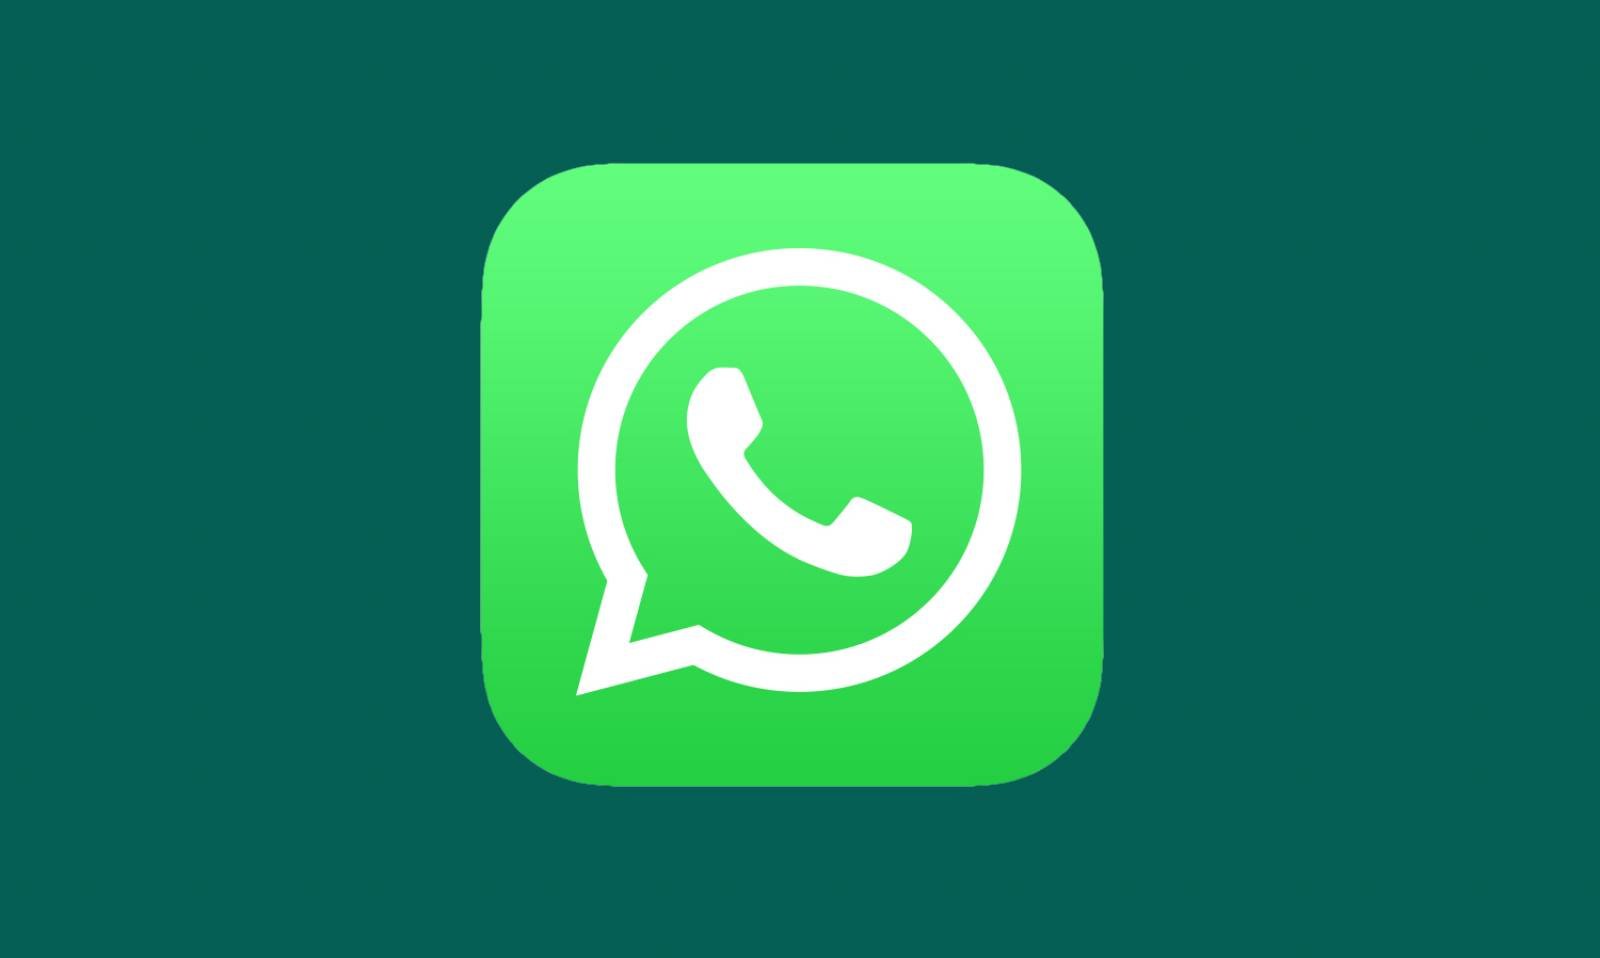 WhatsApp-Delisting